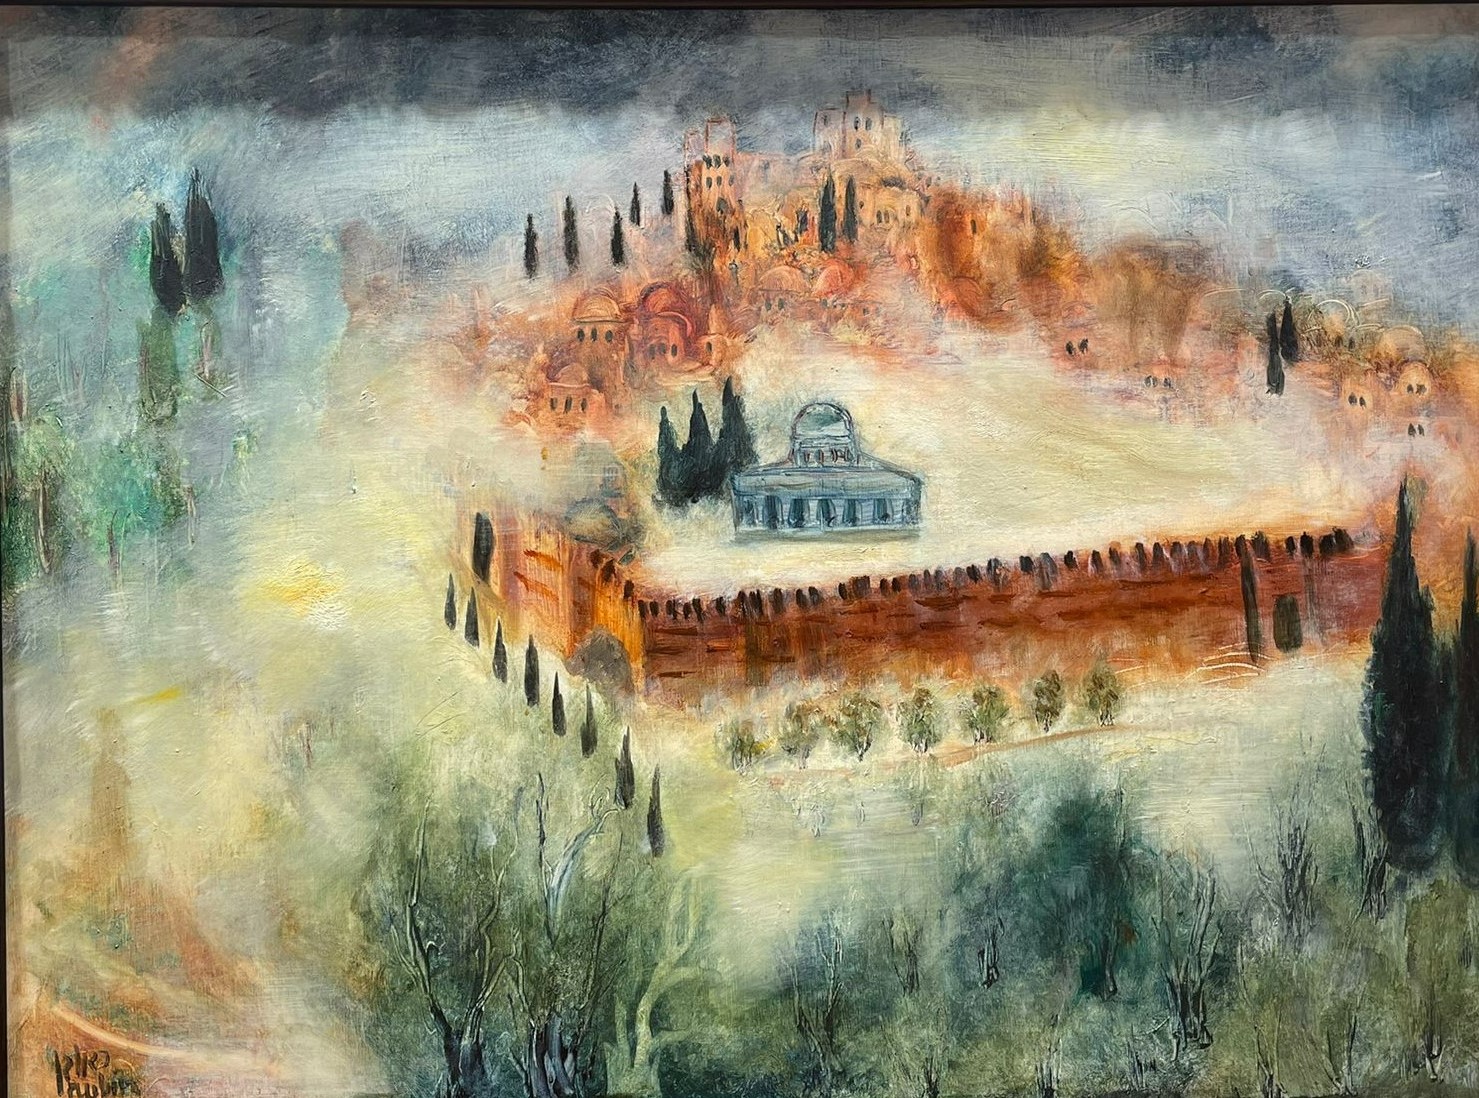 Reuven Rubin - Jerusalem - Gallery - Kings Gallery - Israeli artist - Oil painting.